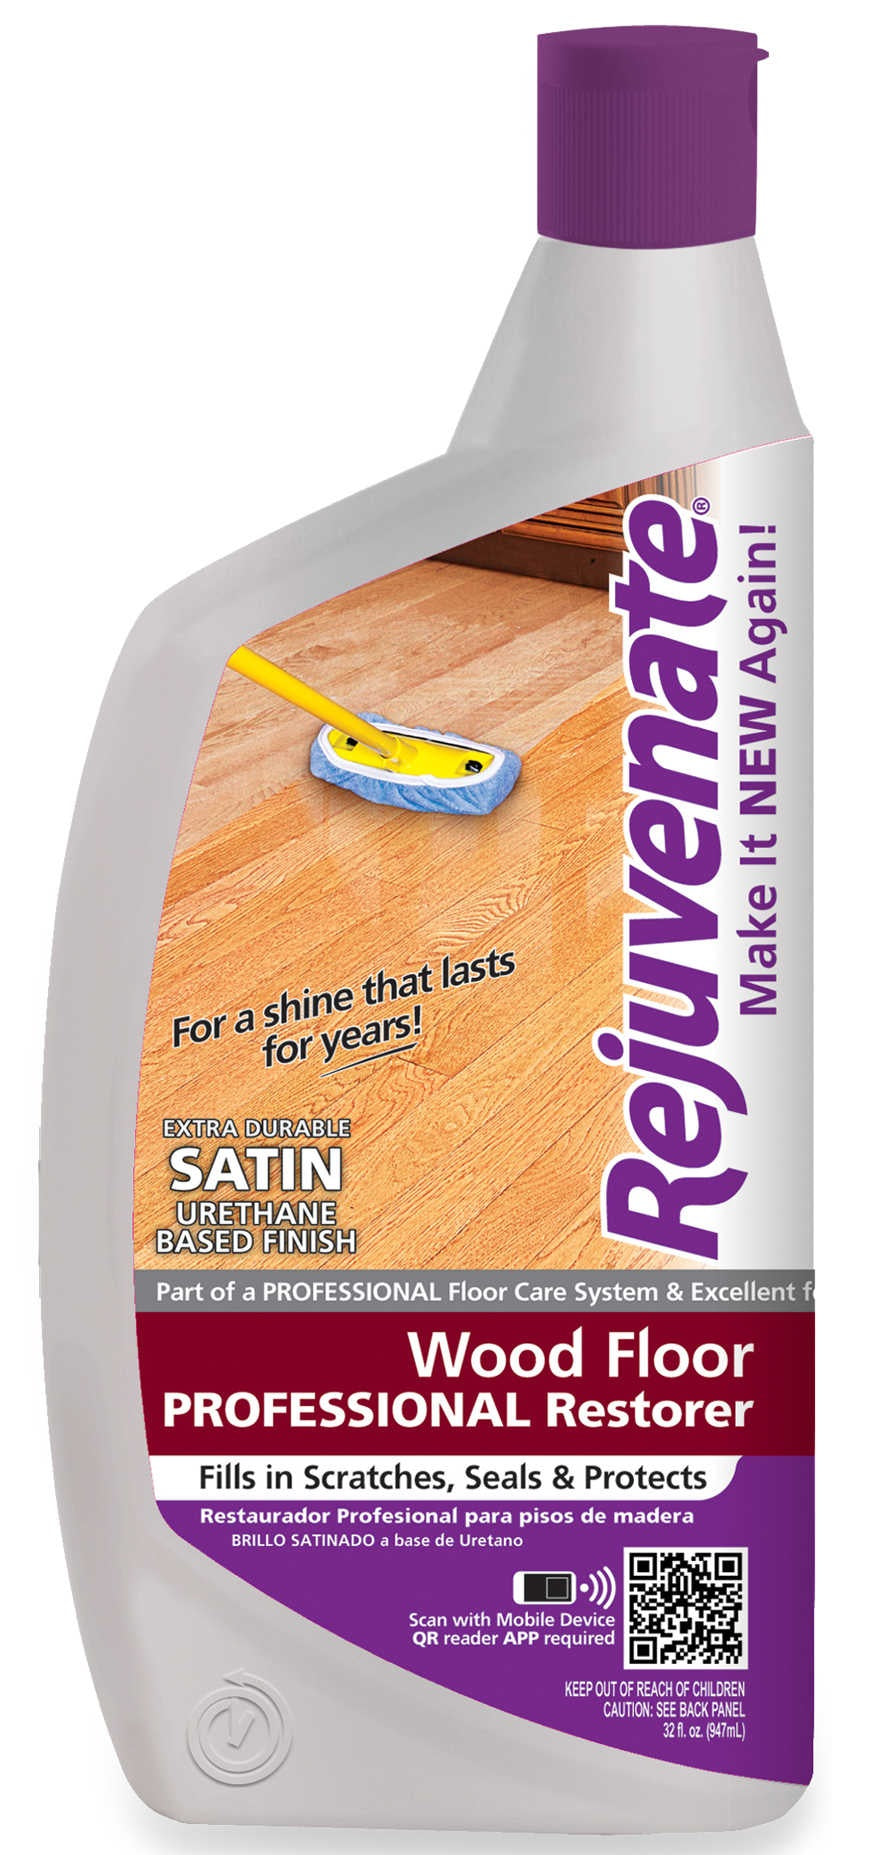 Rejuvenate RJ32PROFS Professional Restorer Wood Floor Restorer, 32 OZ